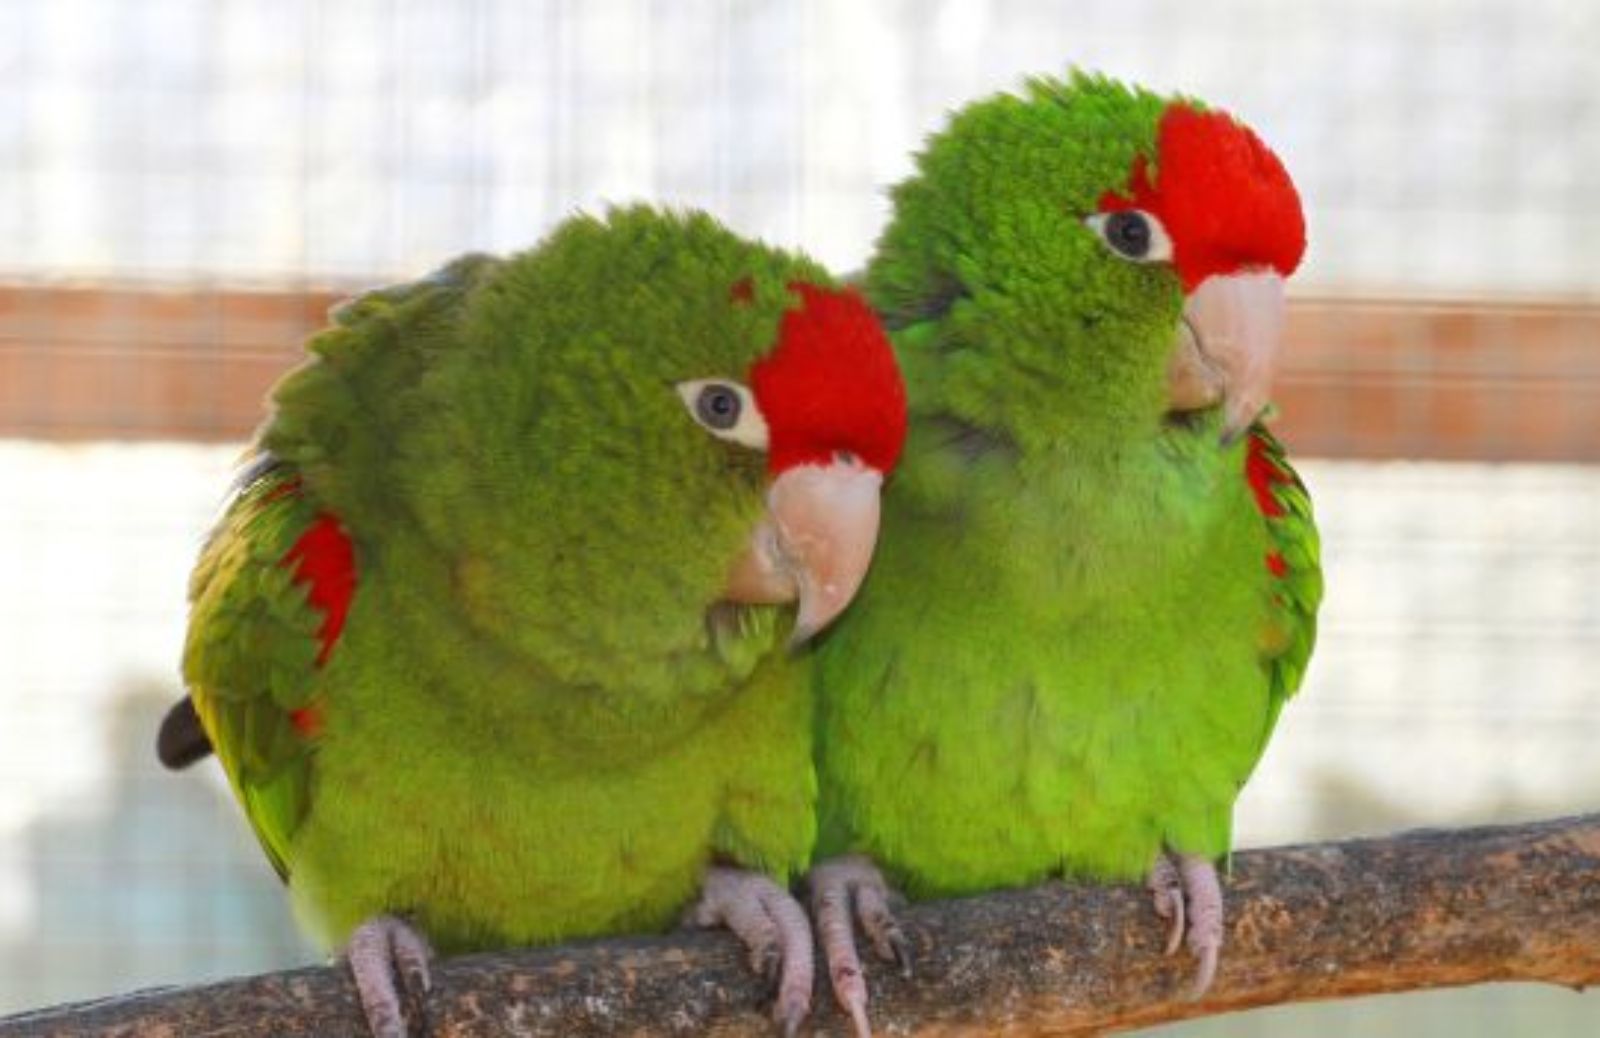 Come scegliere e collocare i posatoi per pappagalli e uccellini